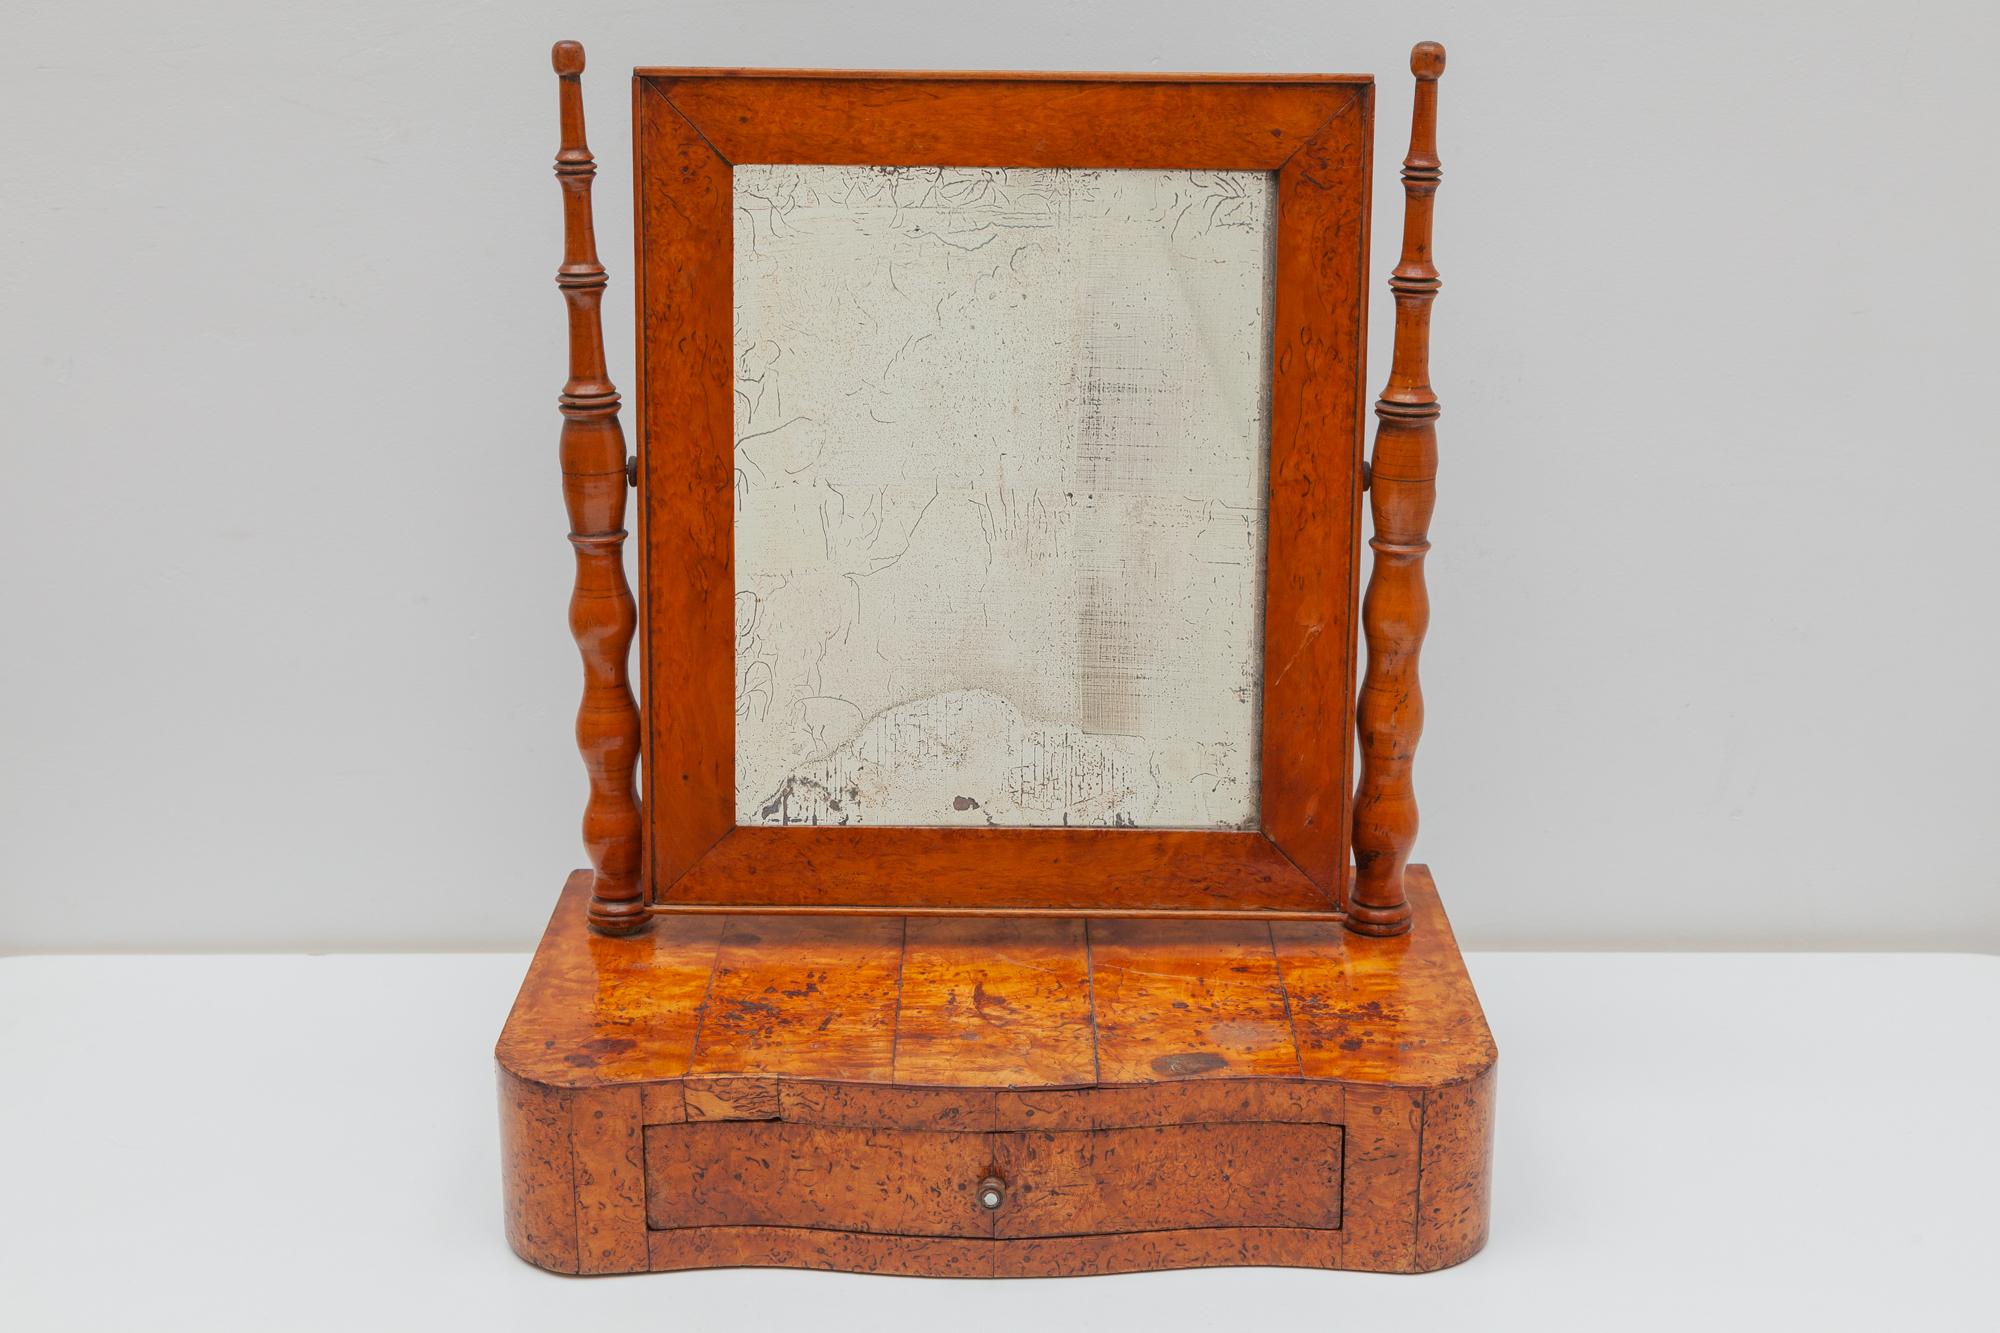 Schöner Biedermeier-Tischspiegel aus dem 19. Jahrhundert aus der zweiten Periode in Österreich, um 1850. Der schöne Kosmetikspiegel wurde mit feinem Wurzelholz furniert und mit einer glänzenden, von Hand polierten Schellackoberfläche versehen. Der